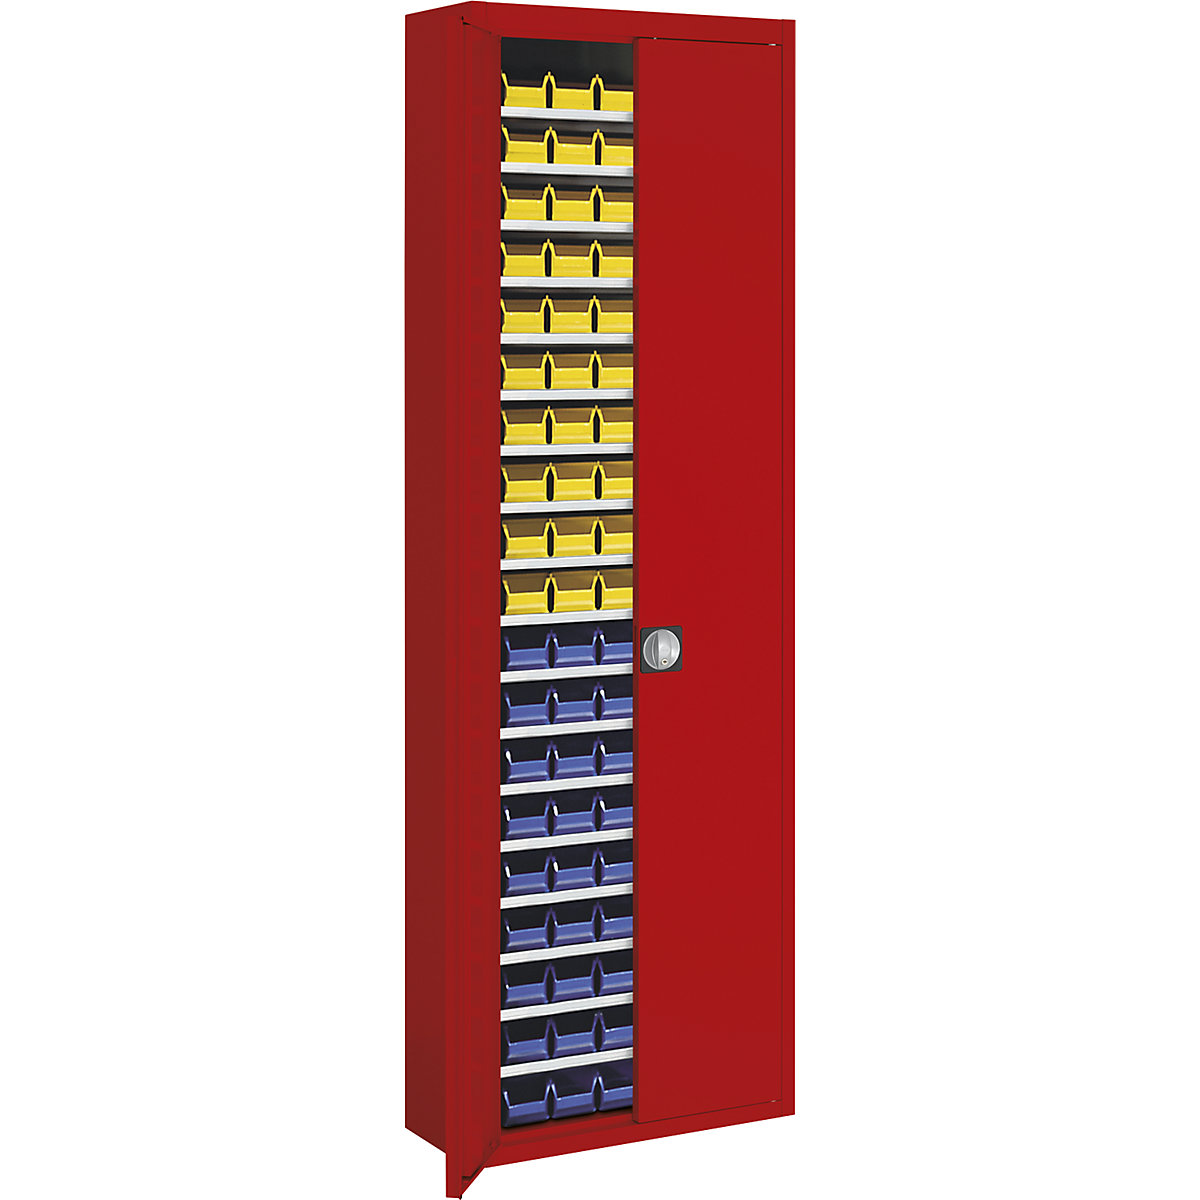 Skladová skříň s přepravkami s viditelným obsahem – mauser, v x š x h 2150 x 680 x 280 mm, jednobarevné, červená, 114 přepravek-10